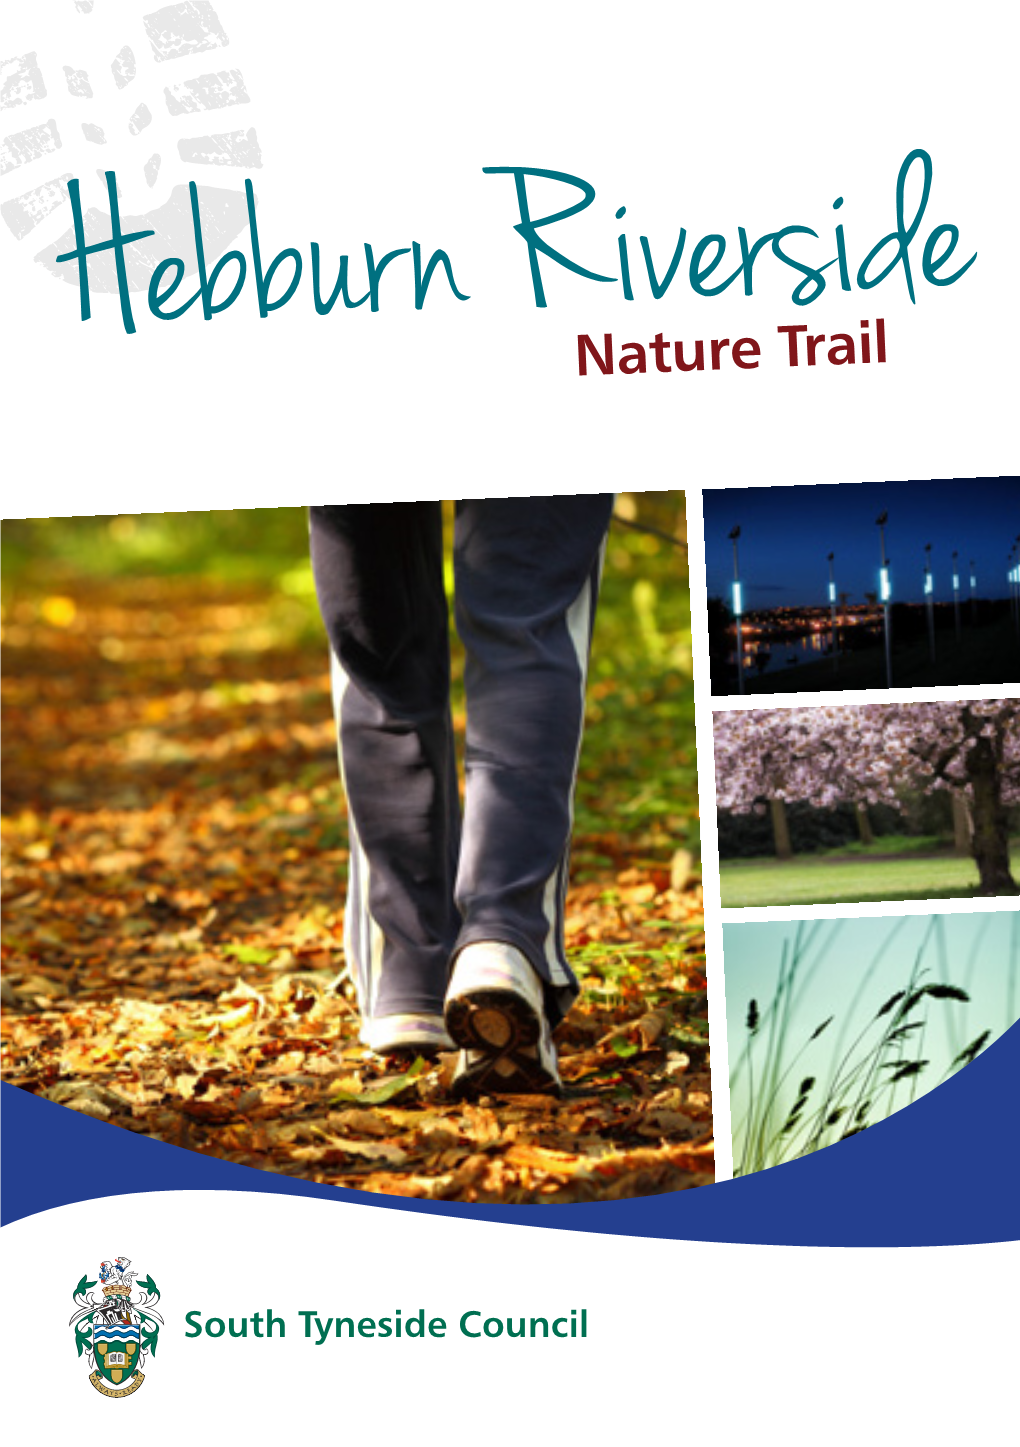 Hebburn Riverside Nature Trail4.82MB